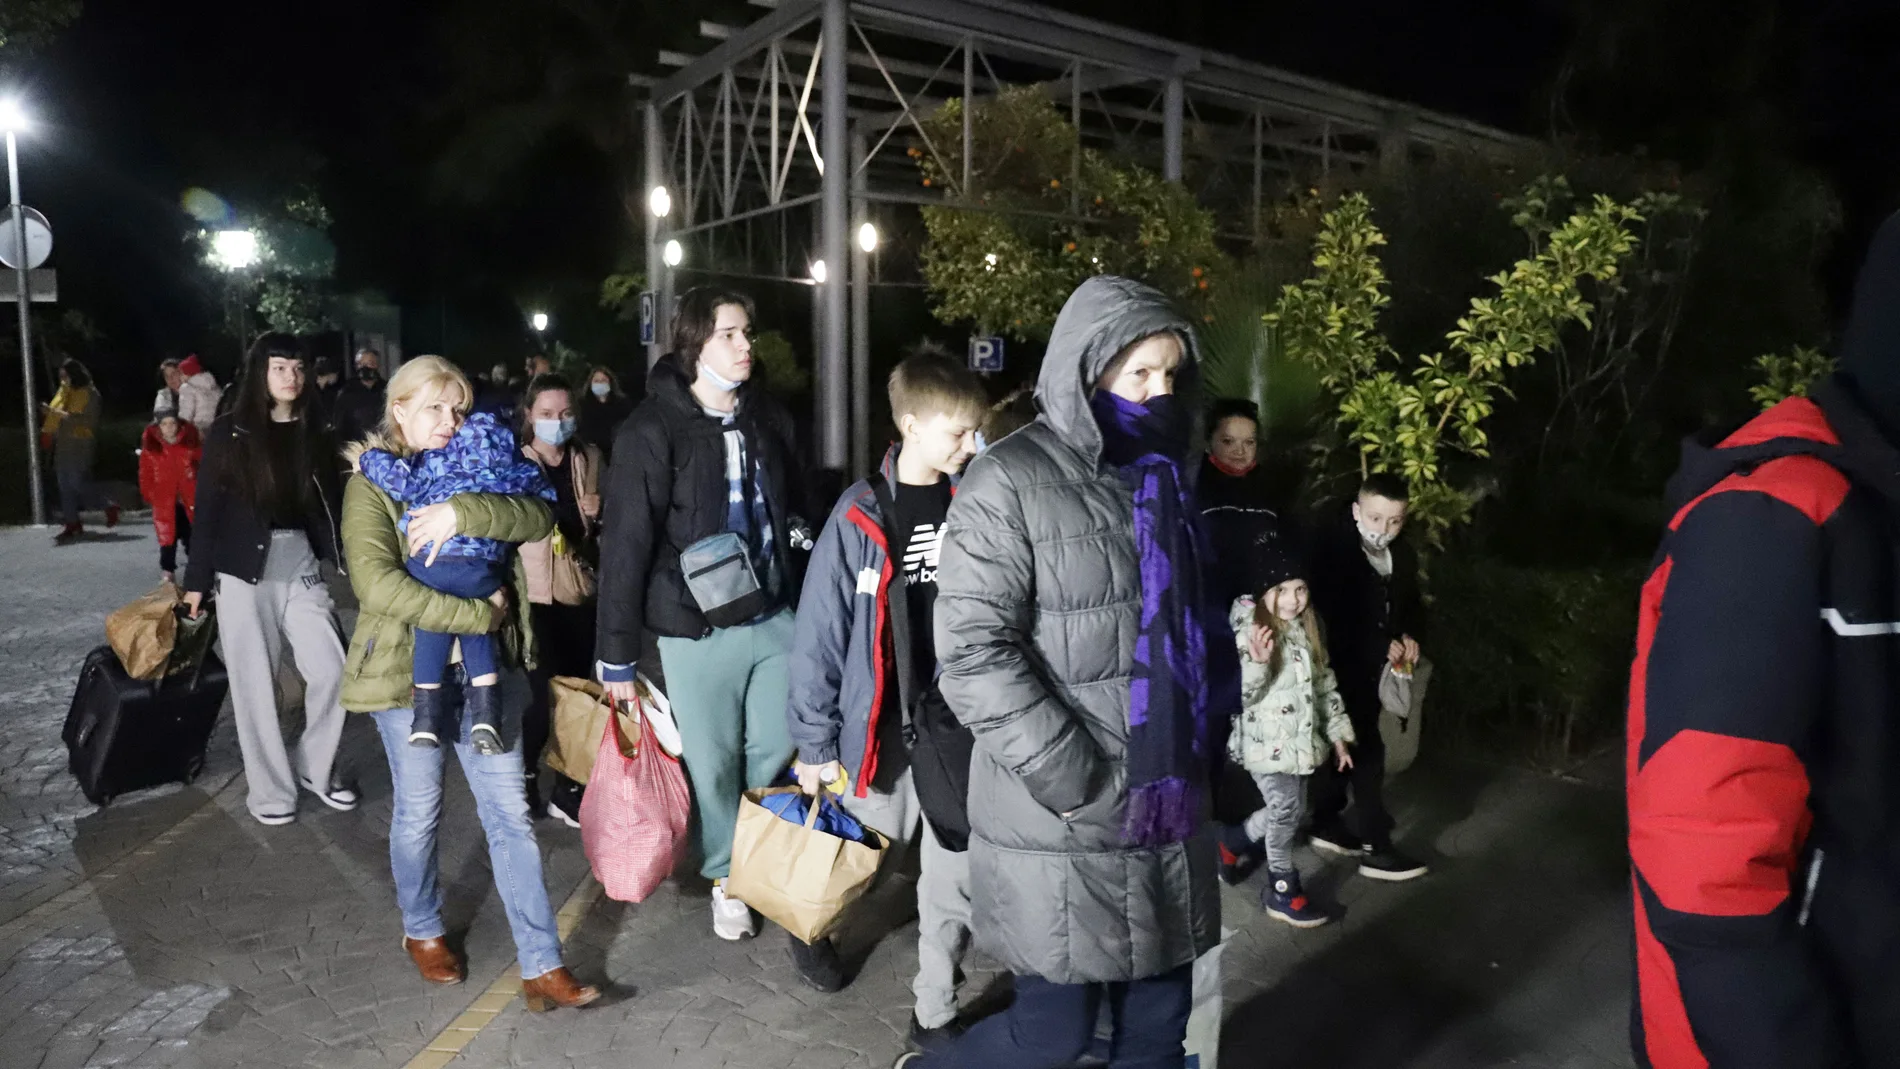 Llegada a Málaga de 47 ucranianos recogidos en su país gracias a la iniciativa de un empresario